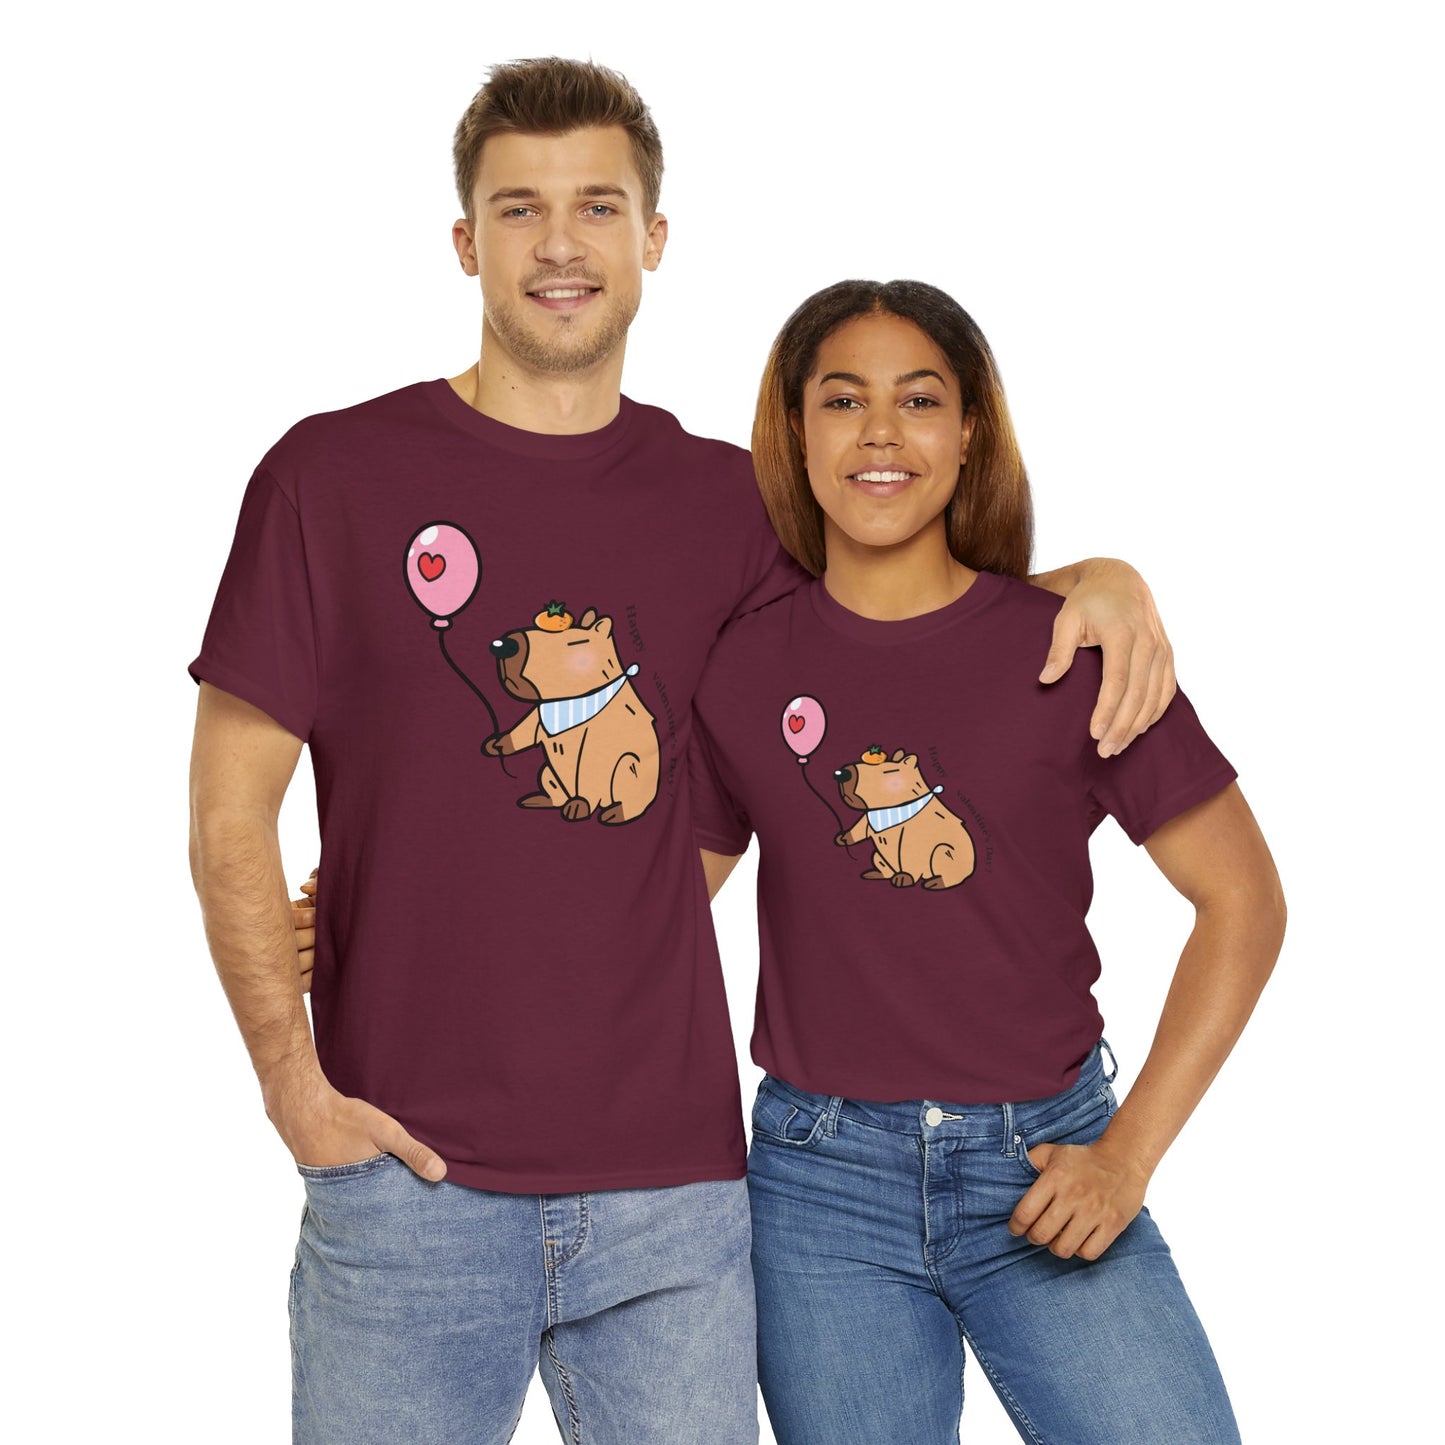 Capybara T-Shirt